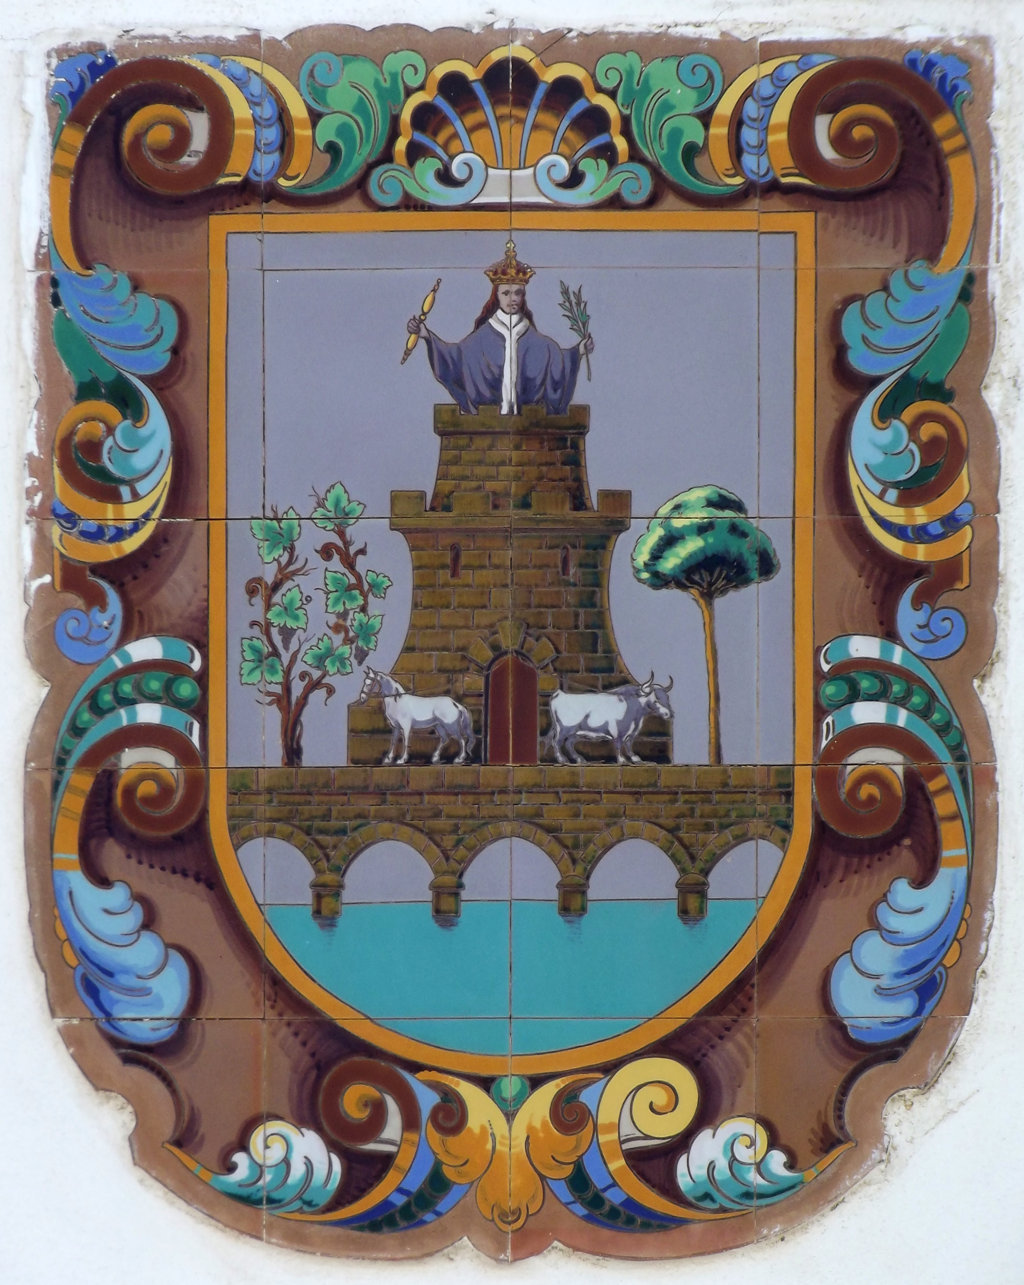 02568. Panel con el escudo de Utrera. Plaza de Abastos. Utrera. Sevilla.